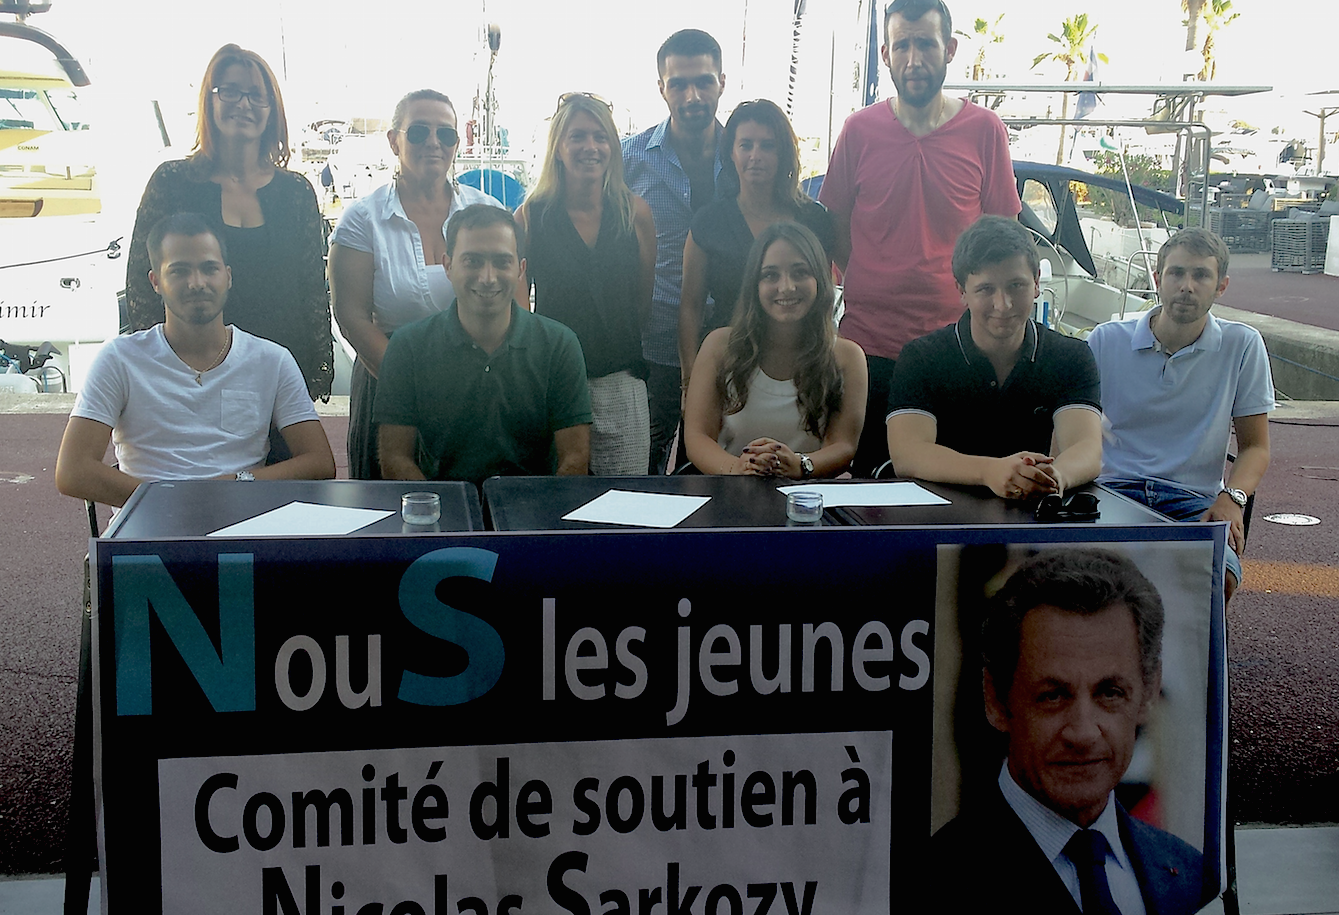 Bastia : Création du comité de soutien des jeunes à Nicolas Sarkozy